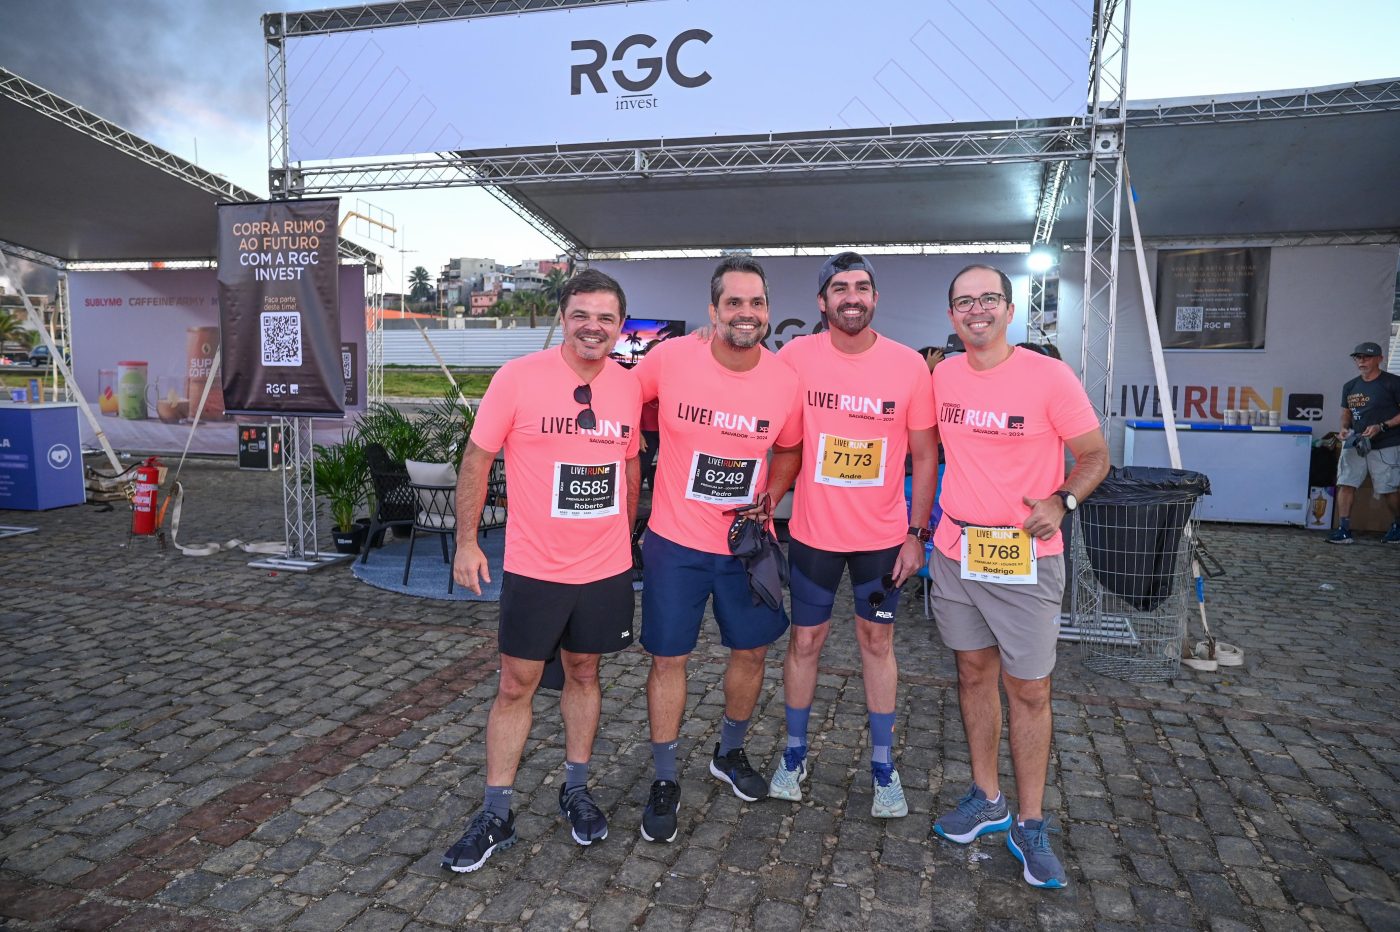  Roberto Calumby, Pedro Rio Branco, André Pinheiro e Rodrigo Neves